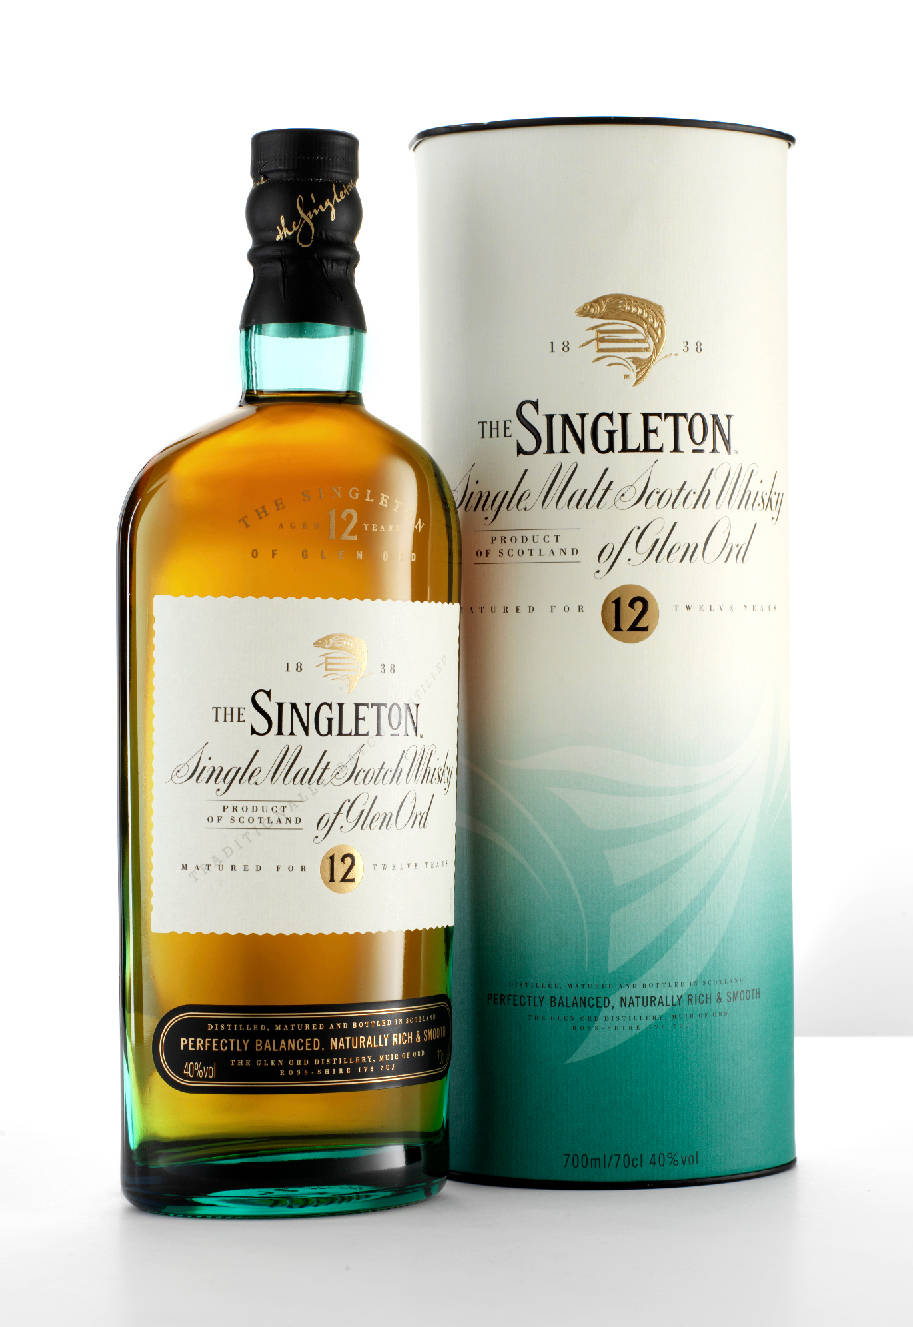 A Classy Singleton of Glen Ord Whisky Bottle Wallpaper